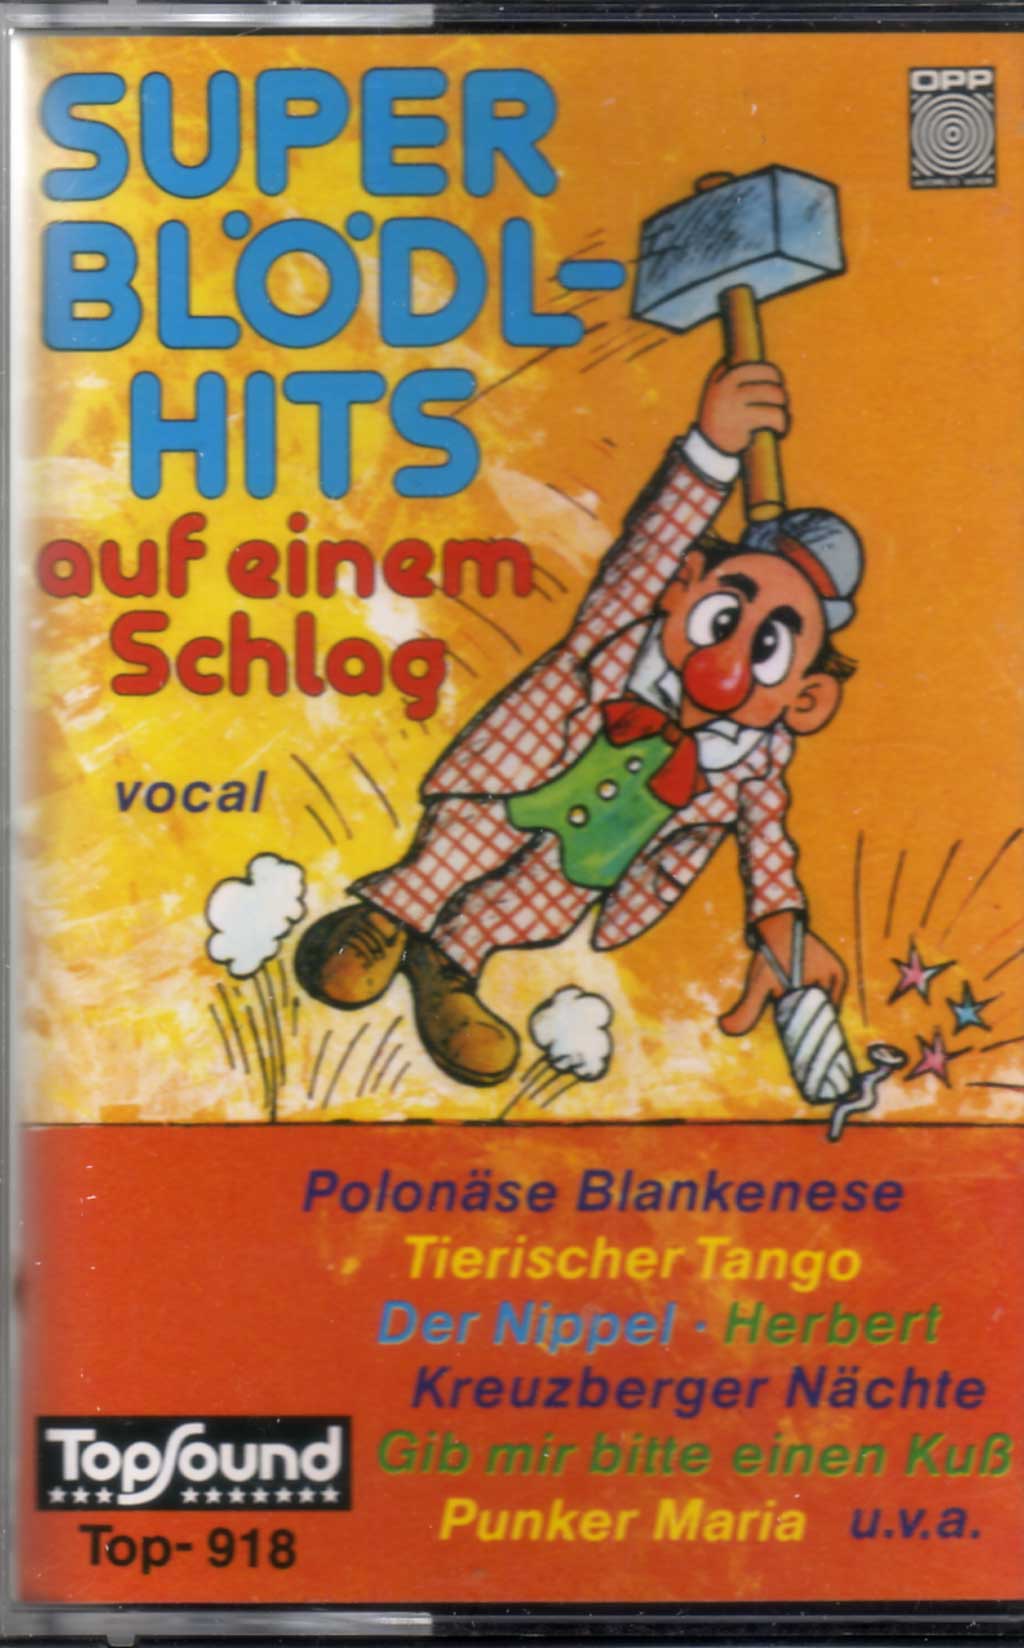 Musikkassette mit Blödel-Hits